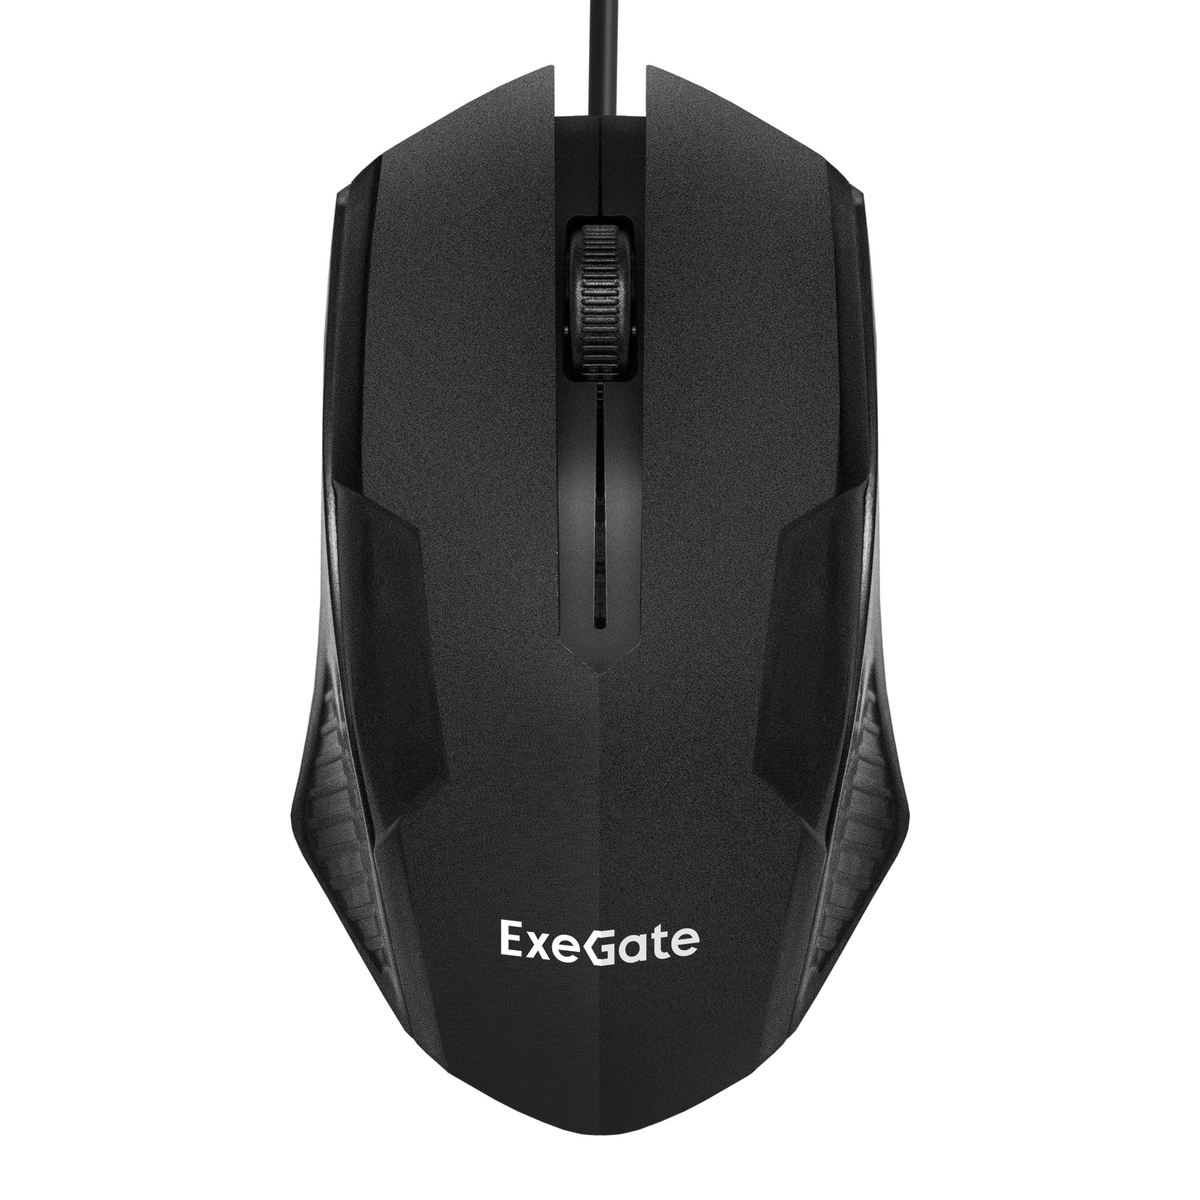 Мышь ExeGate Professional StandardSH-9025L5 (USB, оптическая, 1000dpi, 3D, 3 кнопки и колесо прокрутки, длина кабеля 2,55м, черная, RTL)